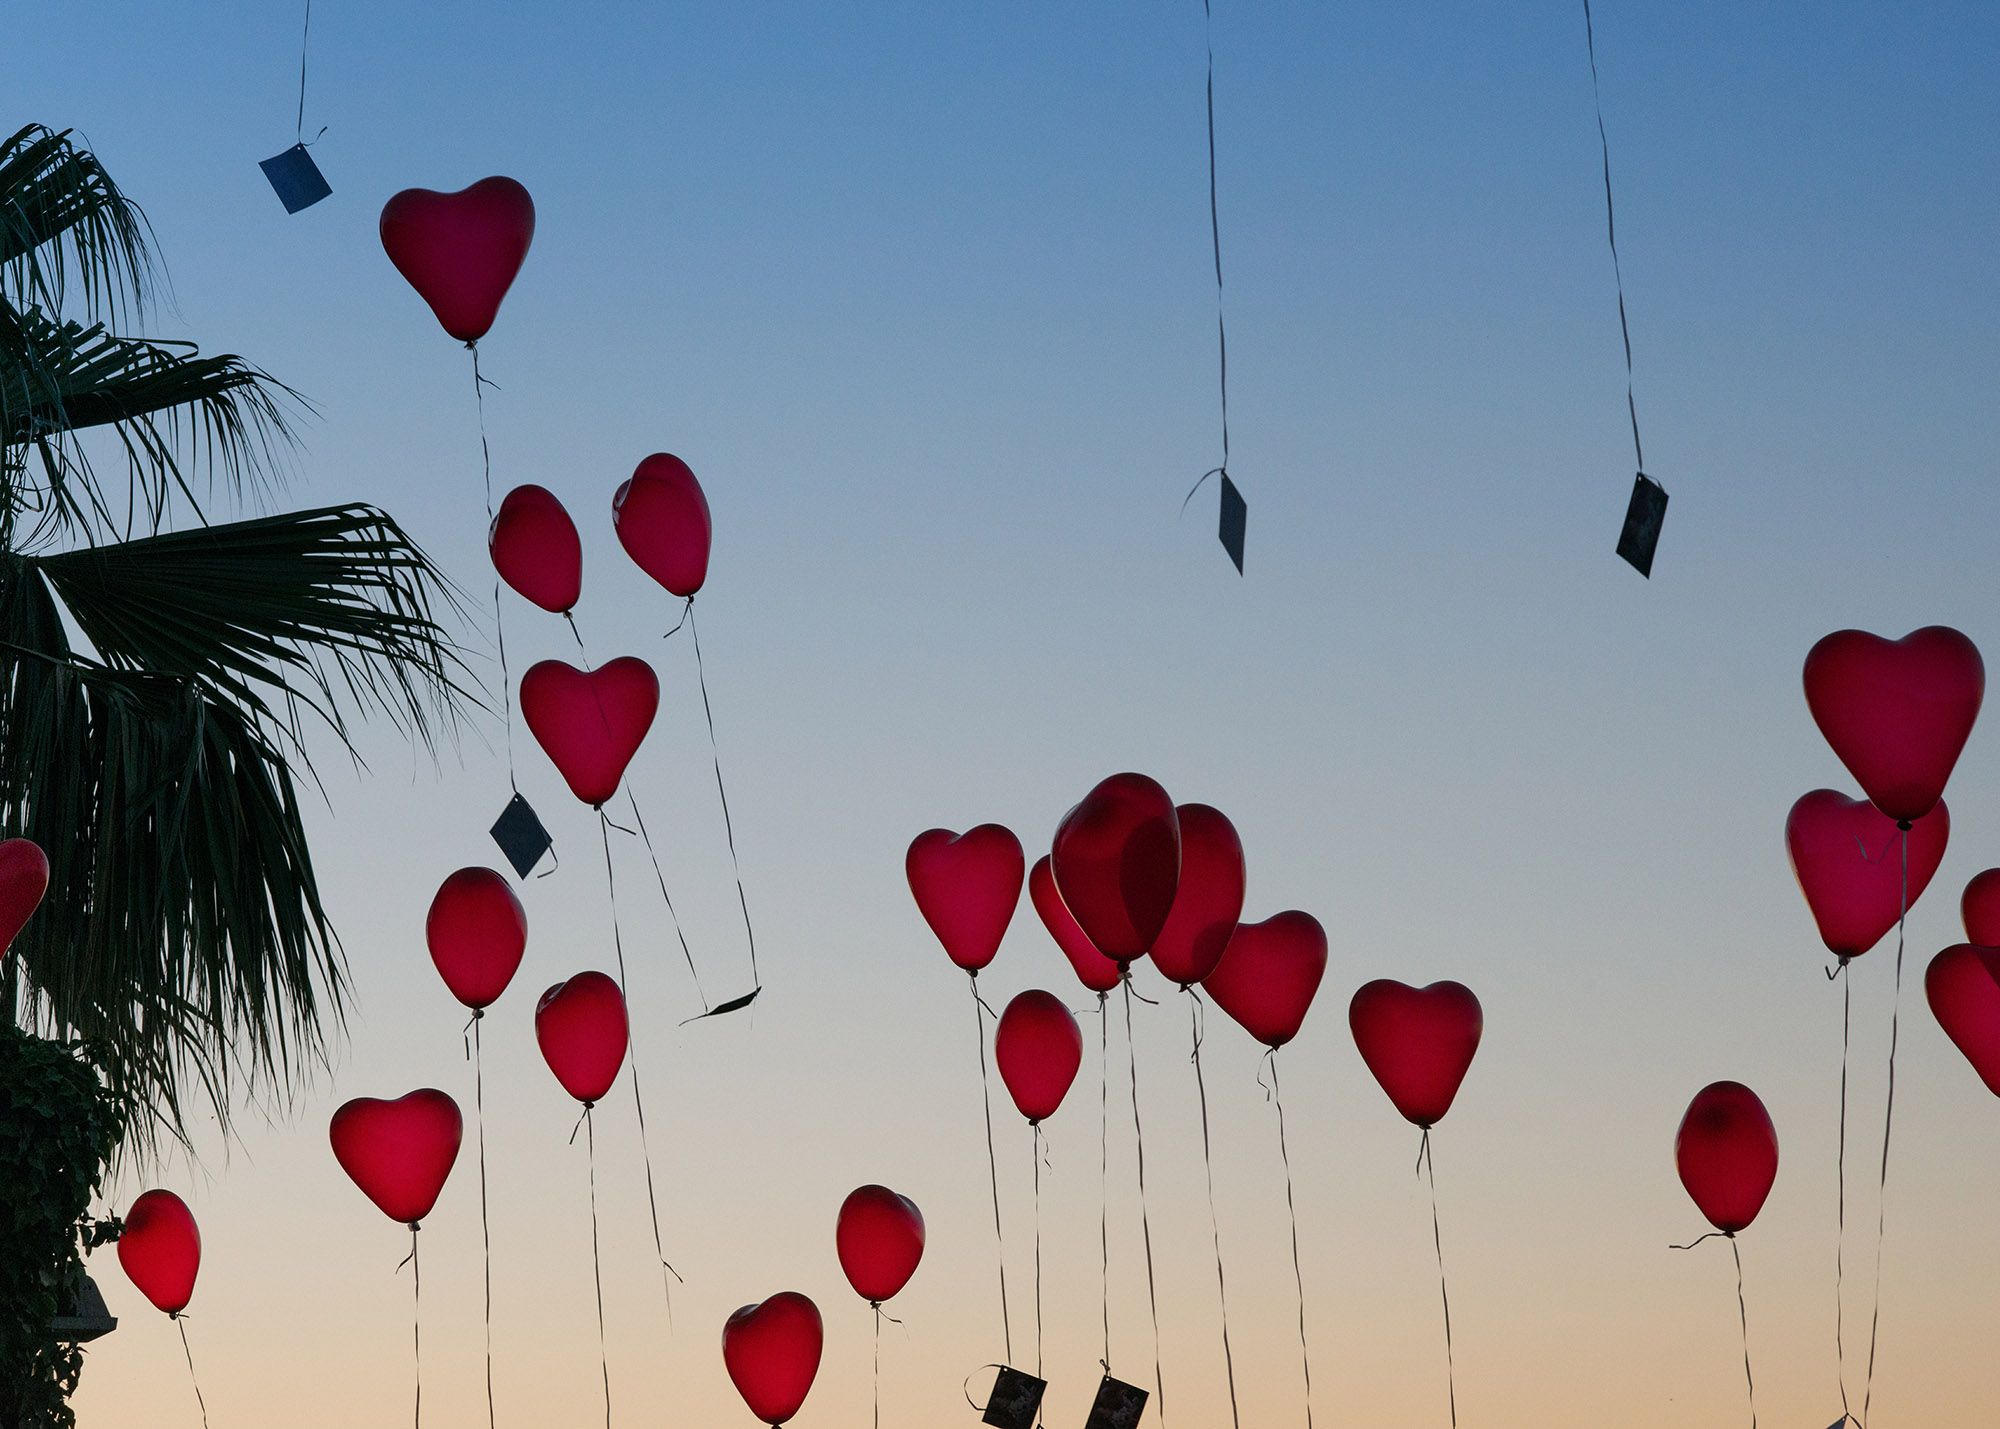 Hochzeitskarten: Glückwünsche zum Hochzeitstag als Luftballons in Herzform